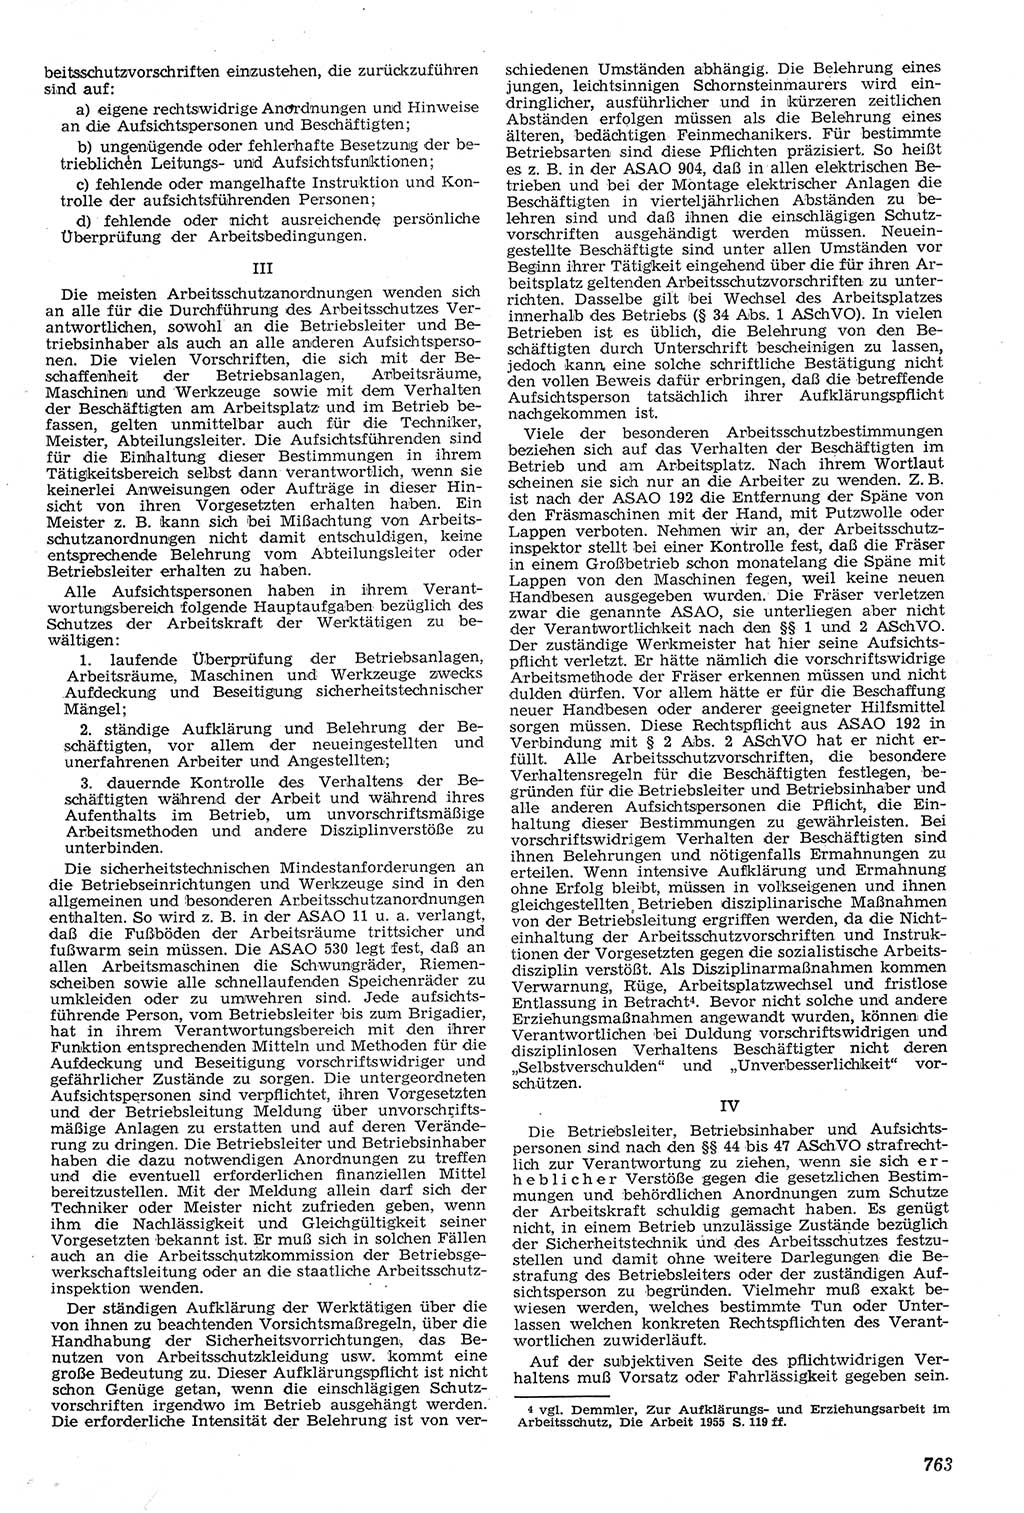 Neue Justiz (NJ), Zeitschrift für Recht und Rechtswissenschaft [Deutsche Demokratische Republik (DDR)], 11. Jahrgang 1957, Seite 763 (NJ DDR 1957, S. 763)